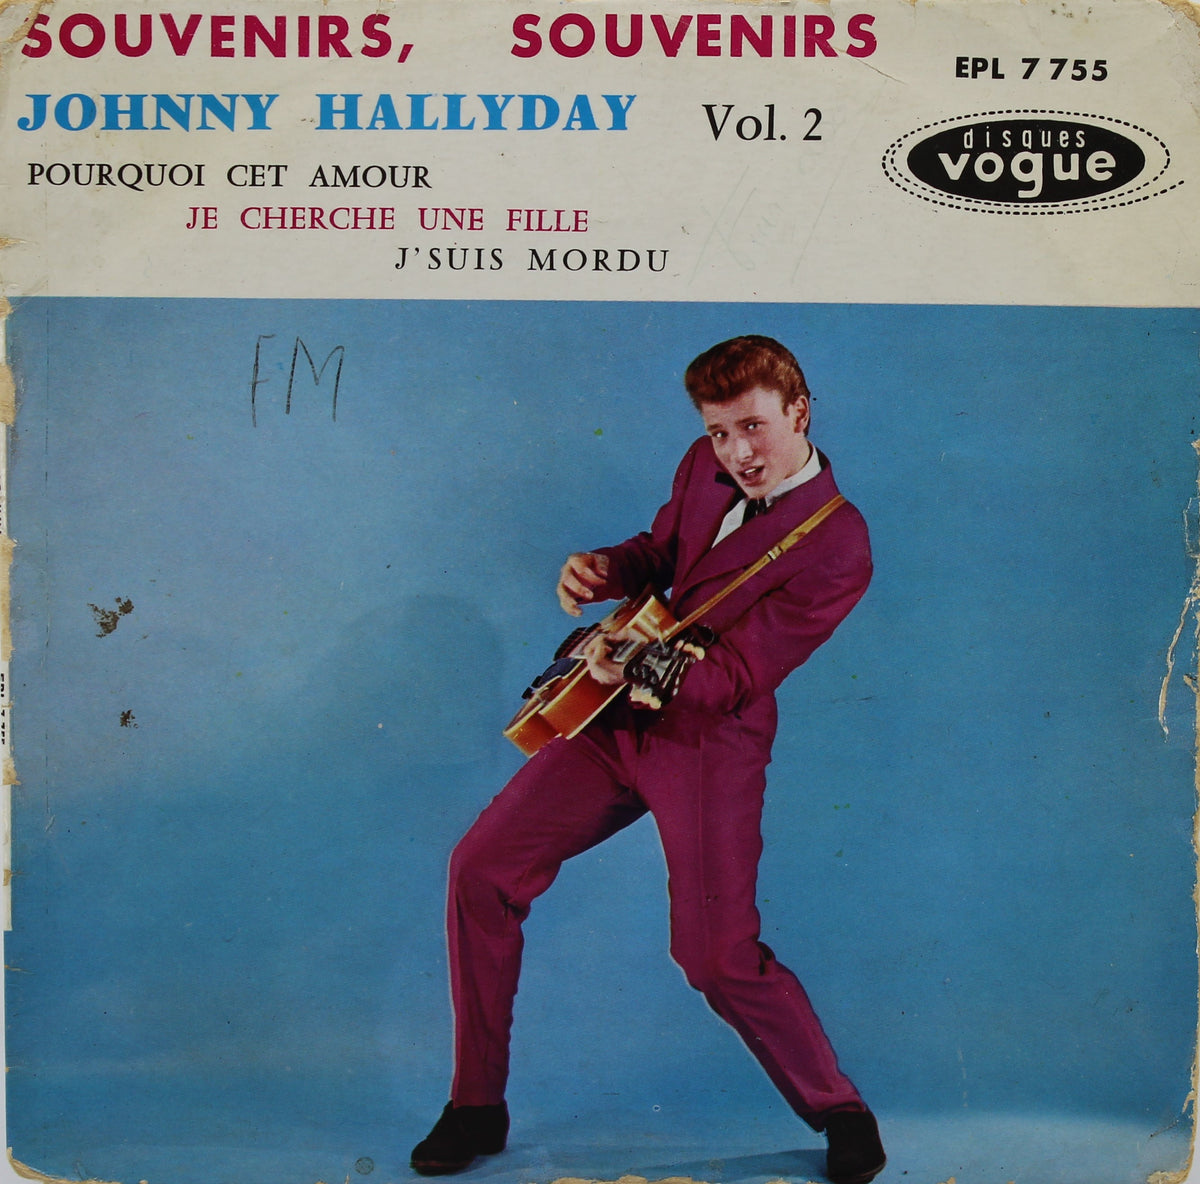 Johnny Hallyday ‎– Souvenirs, Souvenirs, Vinyl, 7&quot;, 45 RPM, EP, France